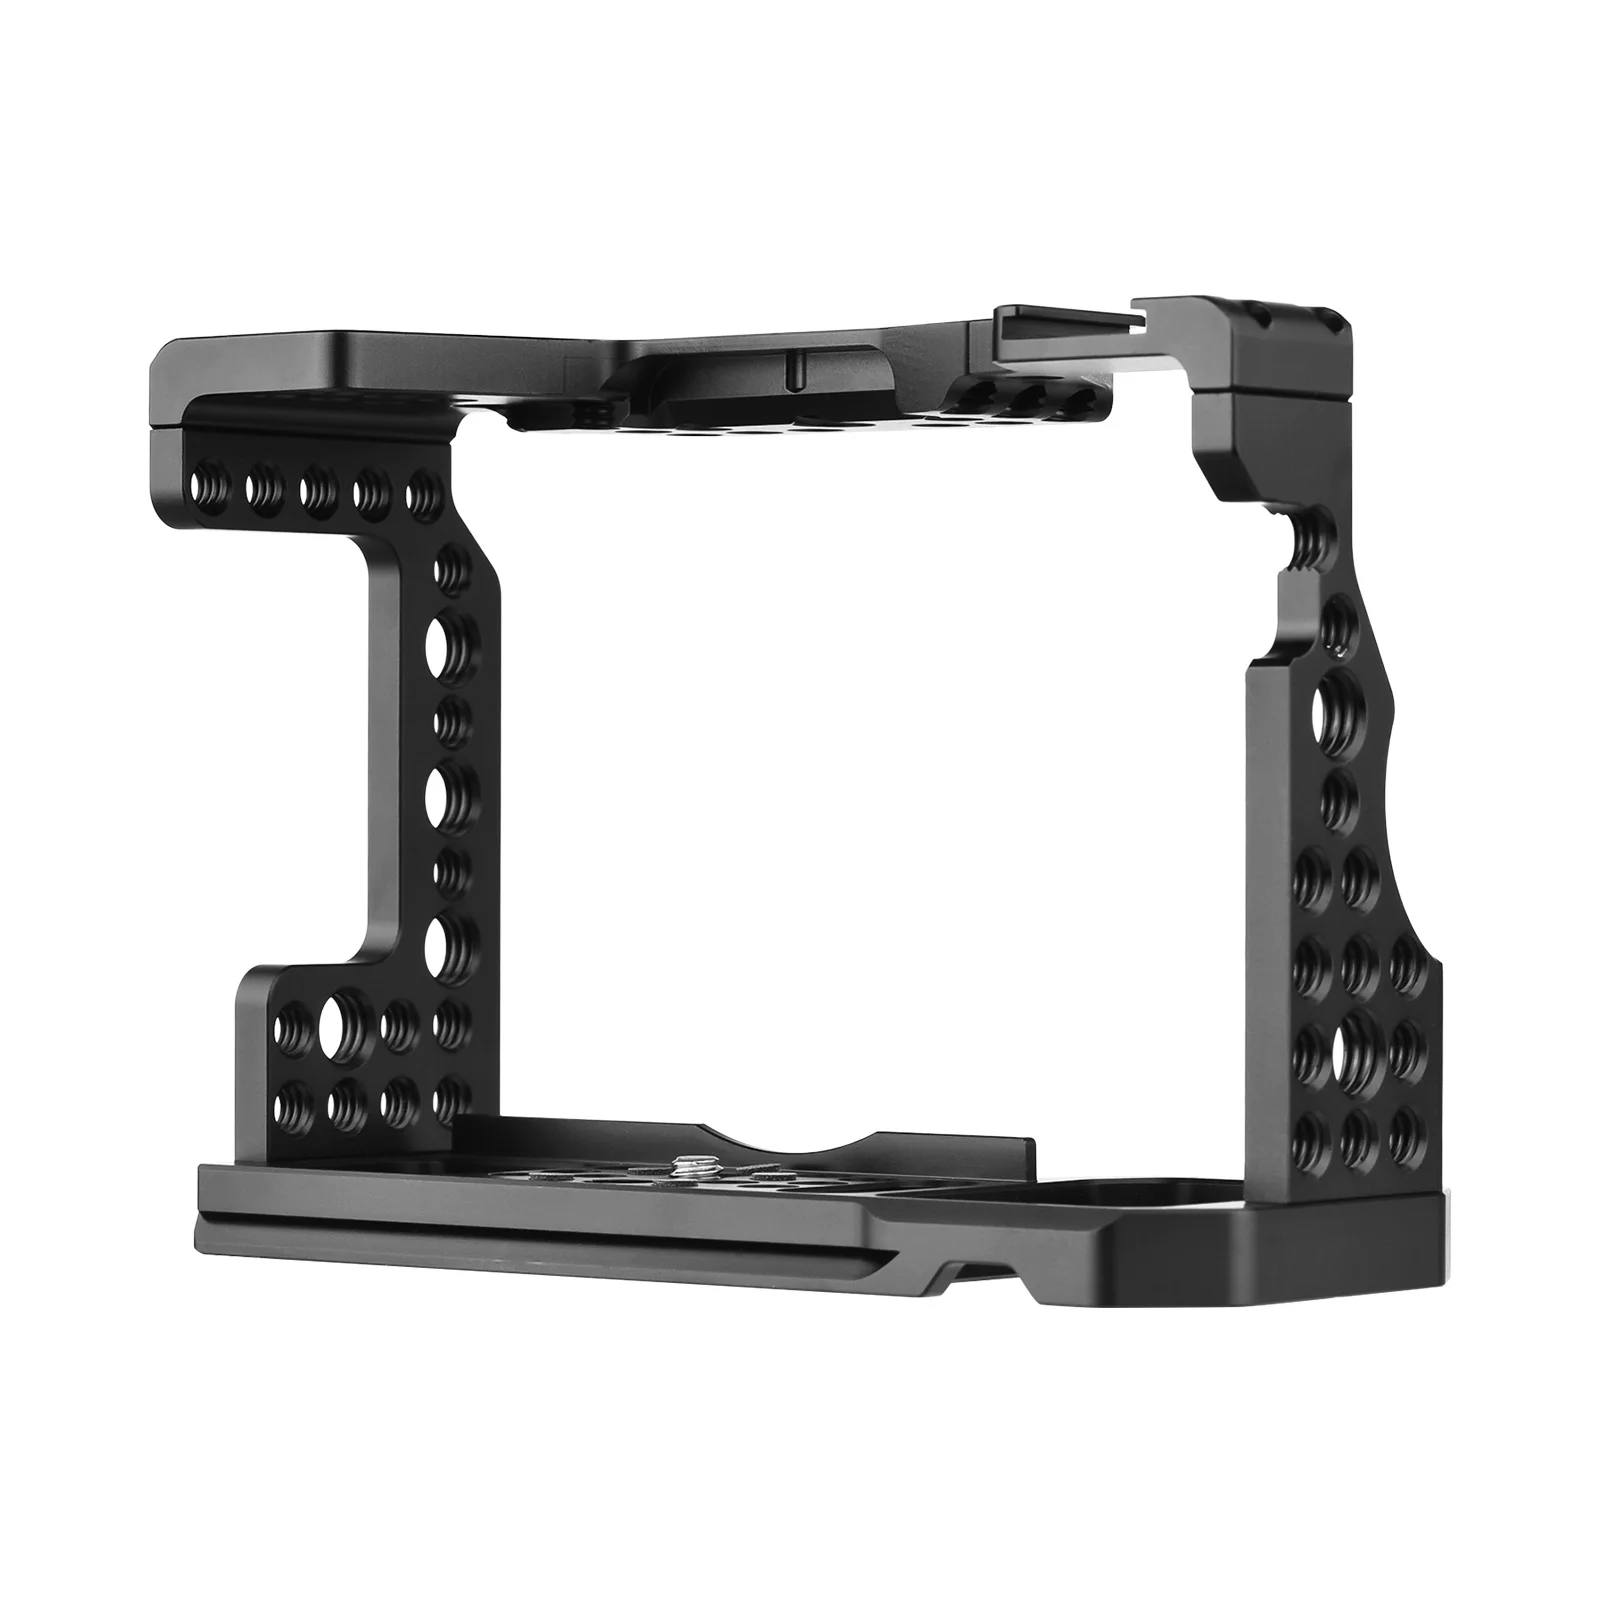 

Сменная клетка для видеокамеры Sony A7M3 A7R3 A9, беззеркальная камера с креплением для холодного башмака, винтовые отверстия 1/4 дюйма и 3/8 дюйма